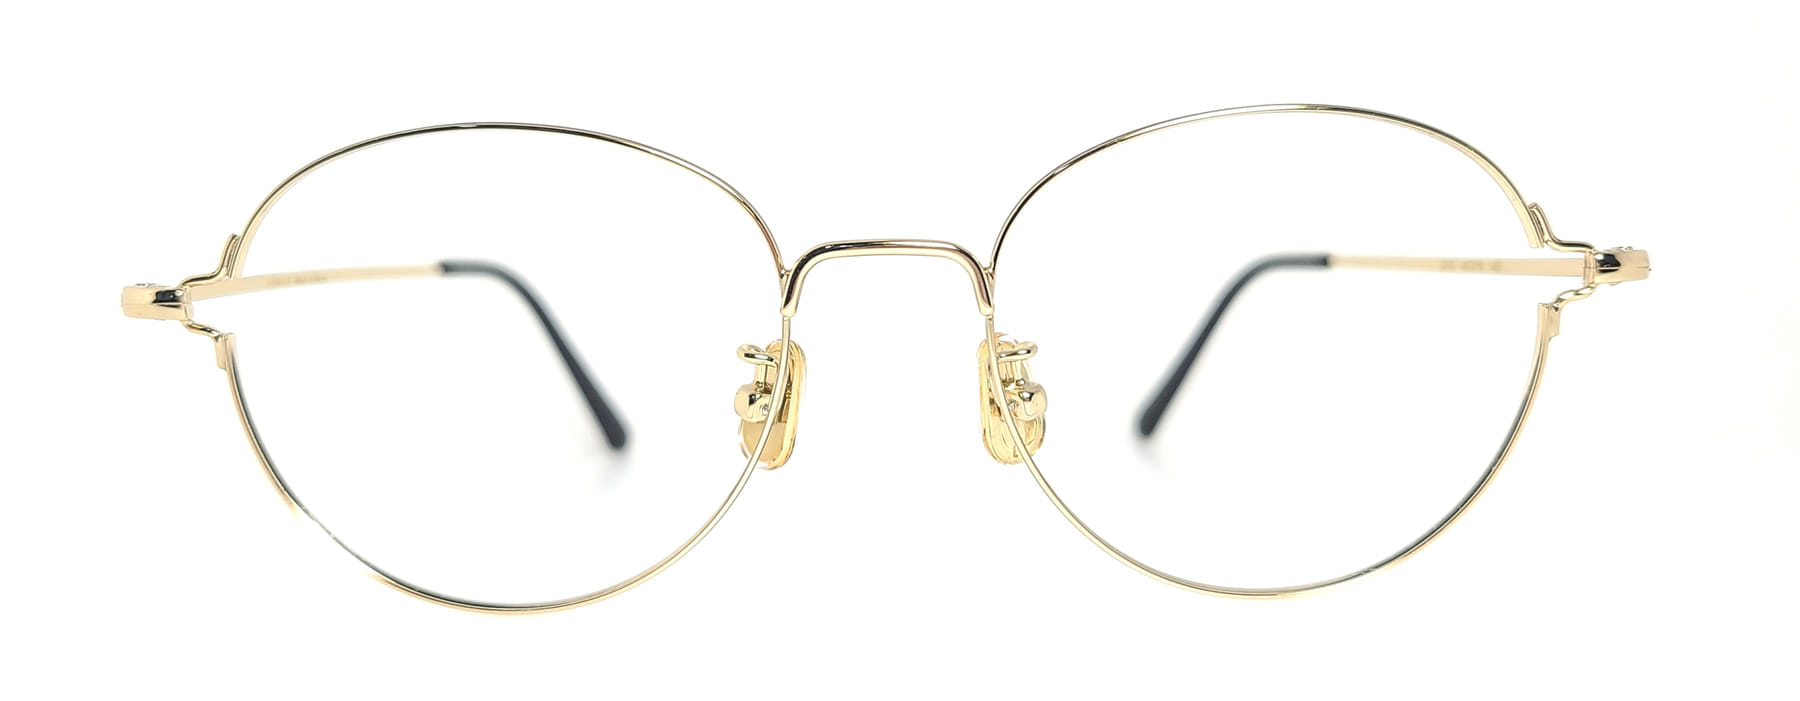 LUBECK 3012, Korean glasses, sunglasses, eyeglasses, glasses